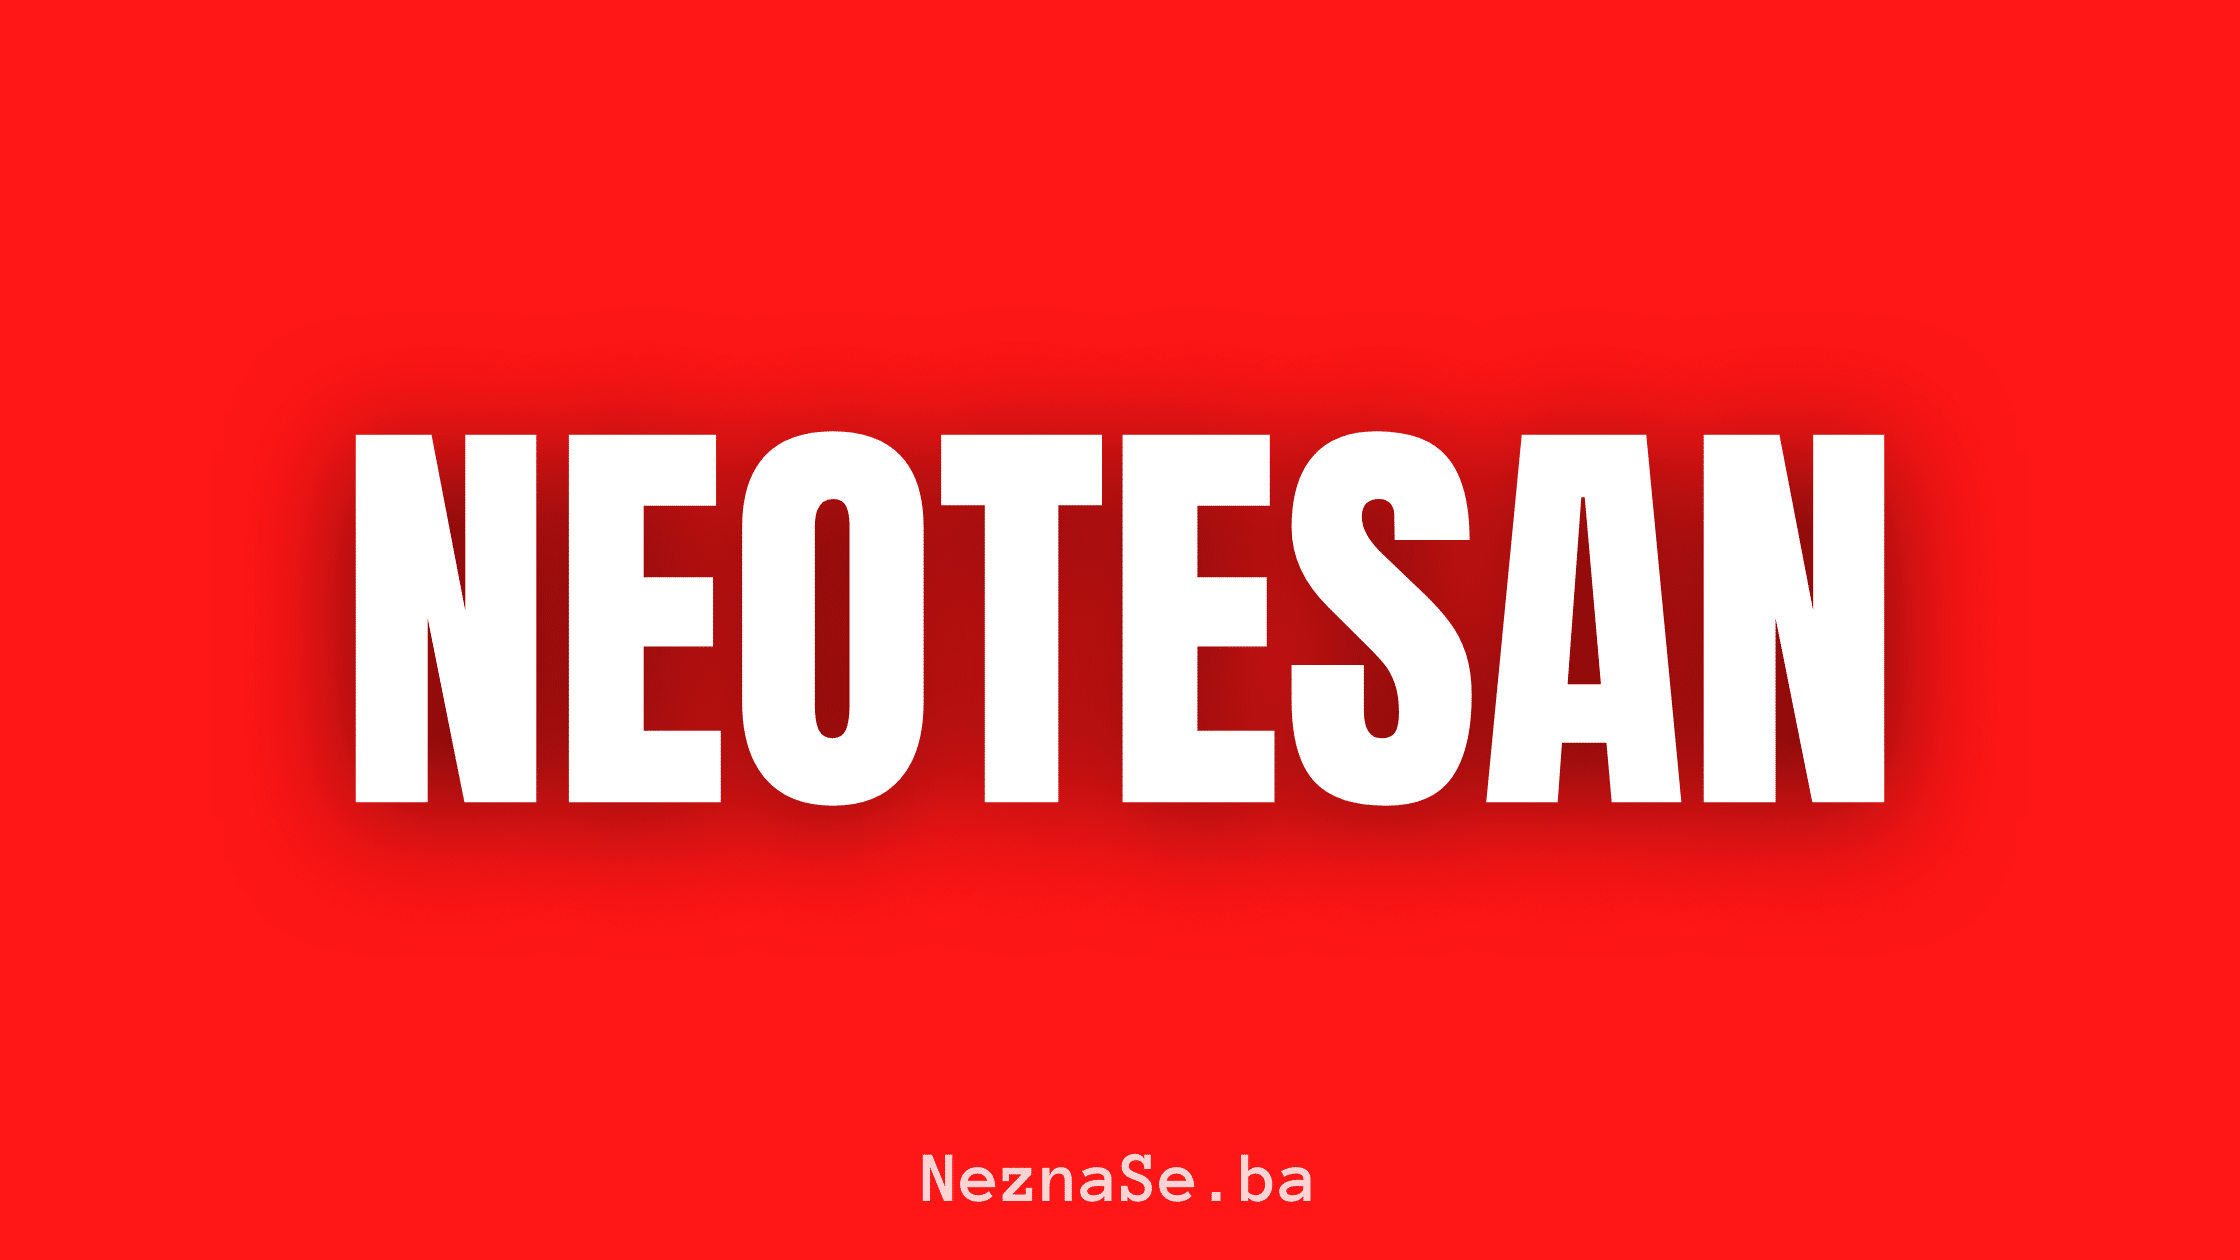 neotesan